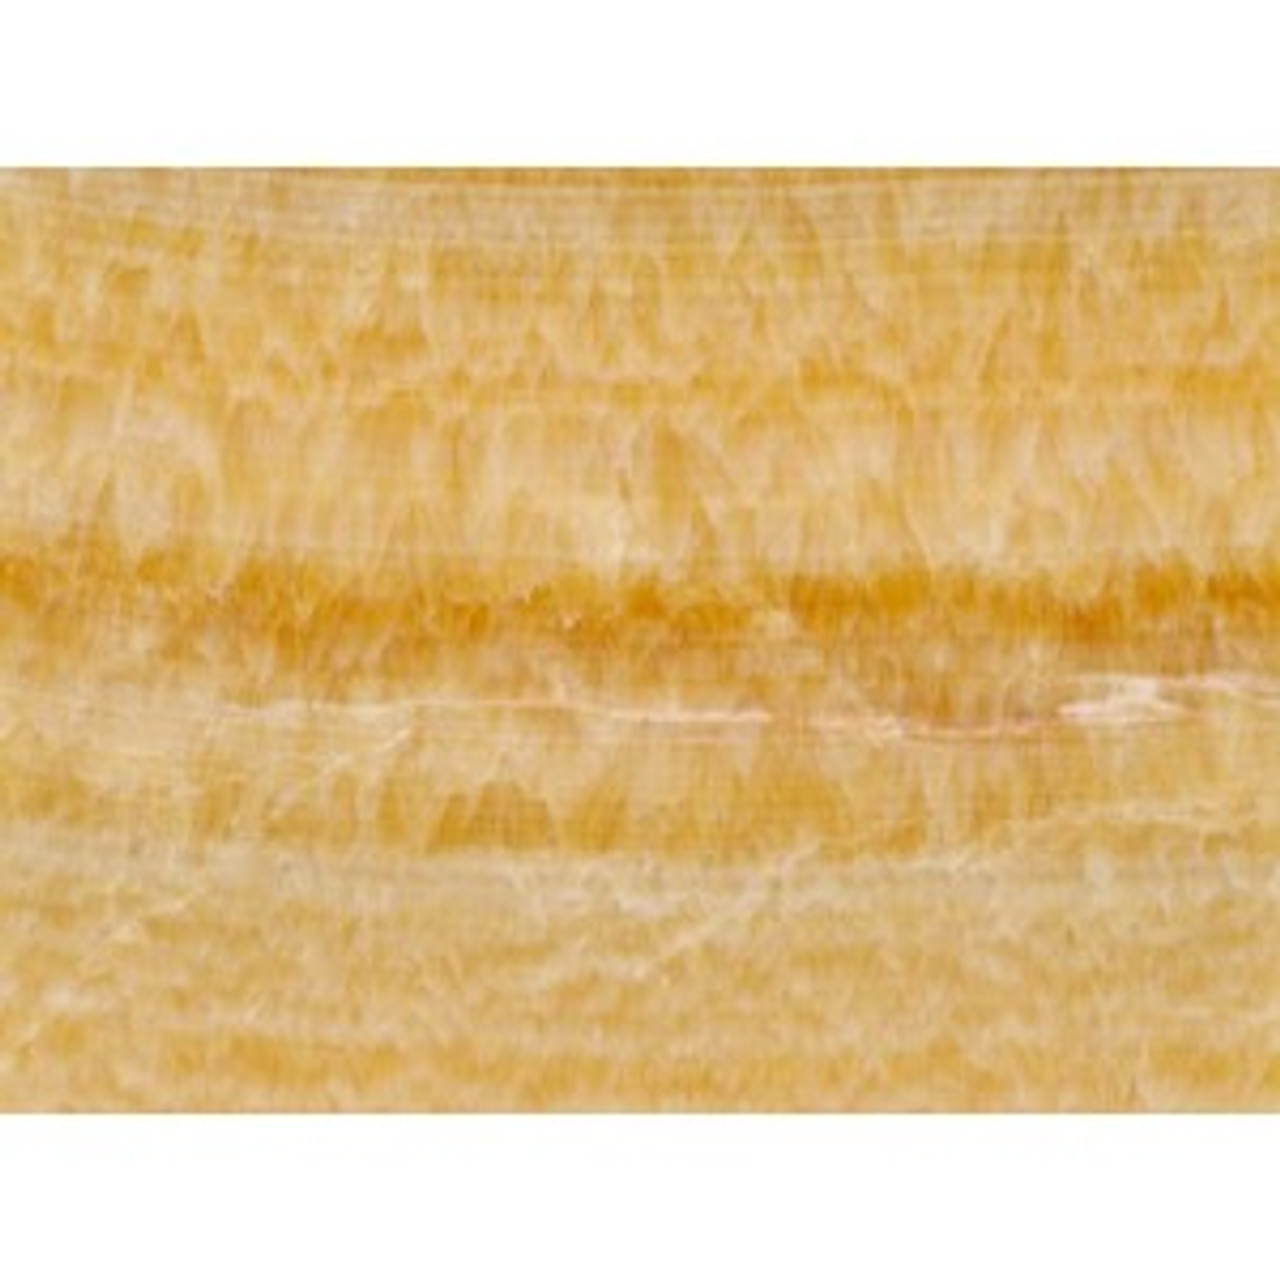 Honey Onyx - One Face Polished, 18" x10" x 3/4"